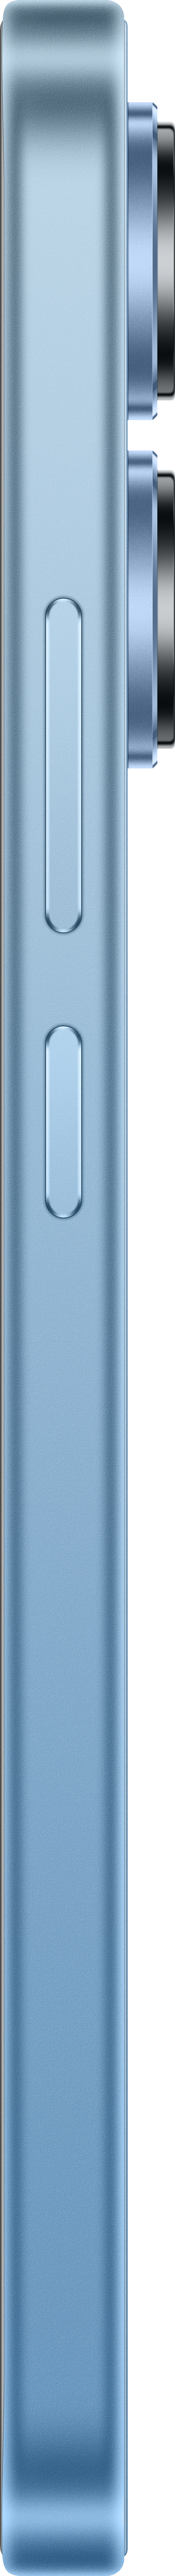 XIAOMI Blue Redmi Note Dual 128 Ice SIM 13 GB